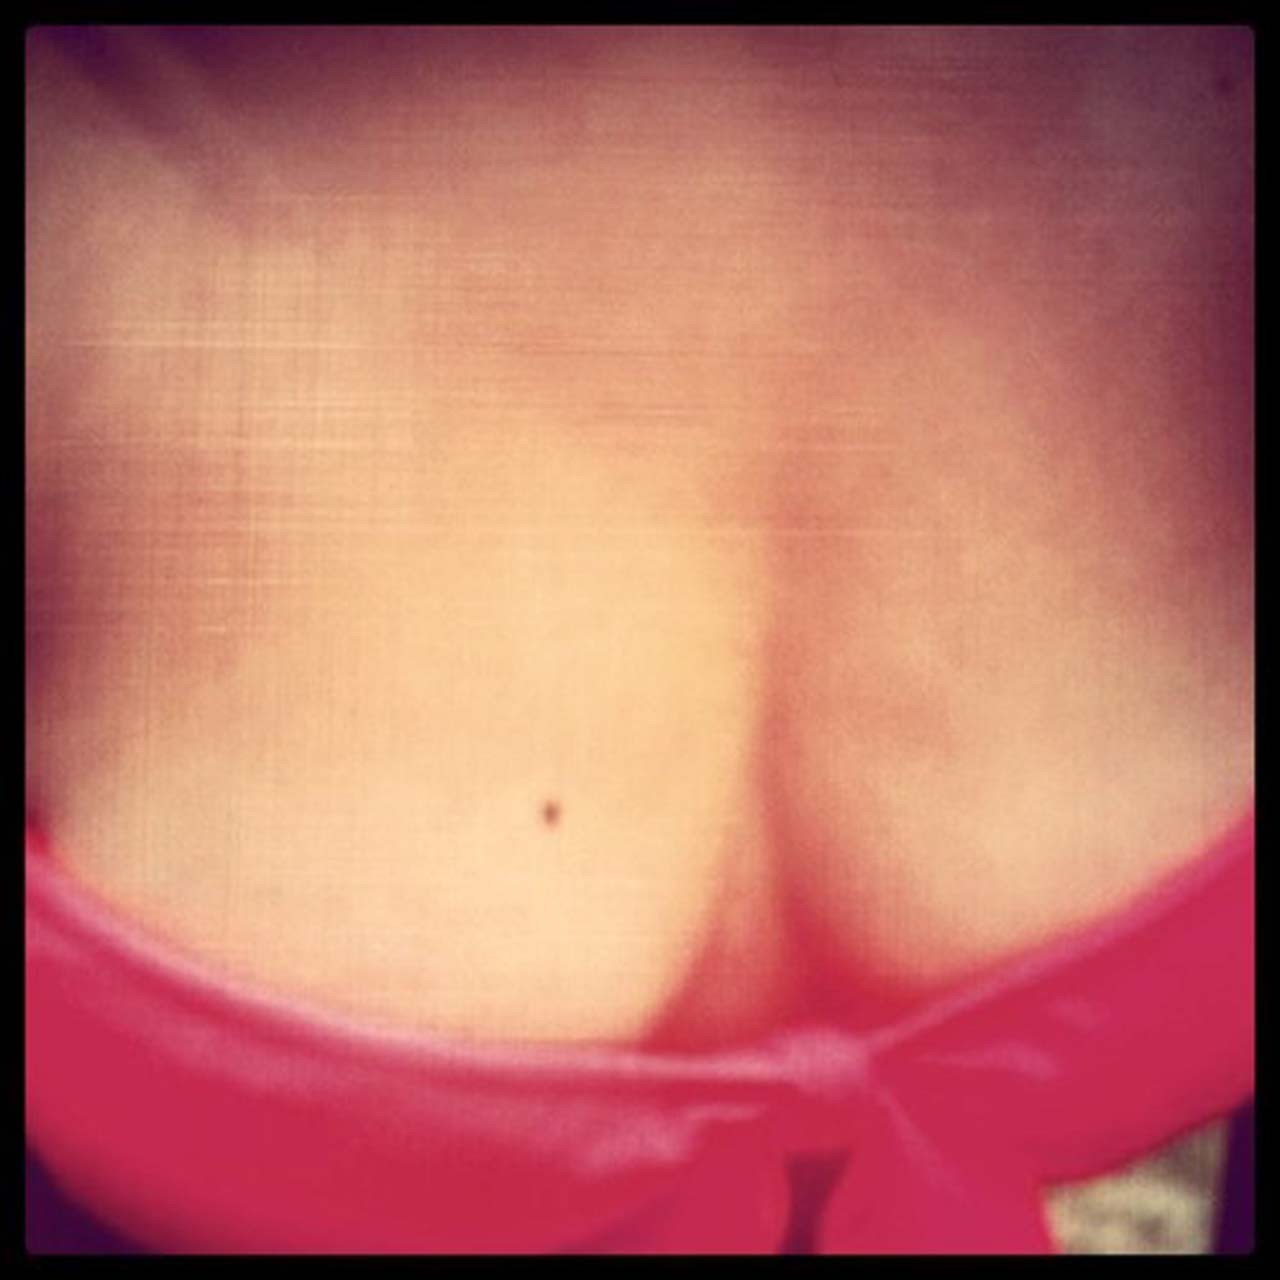 セレーナ・ゴメス、胸の谷間を露出したプライベート写真を公開
 #75292289